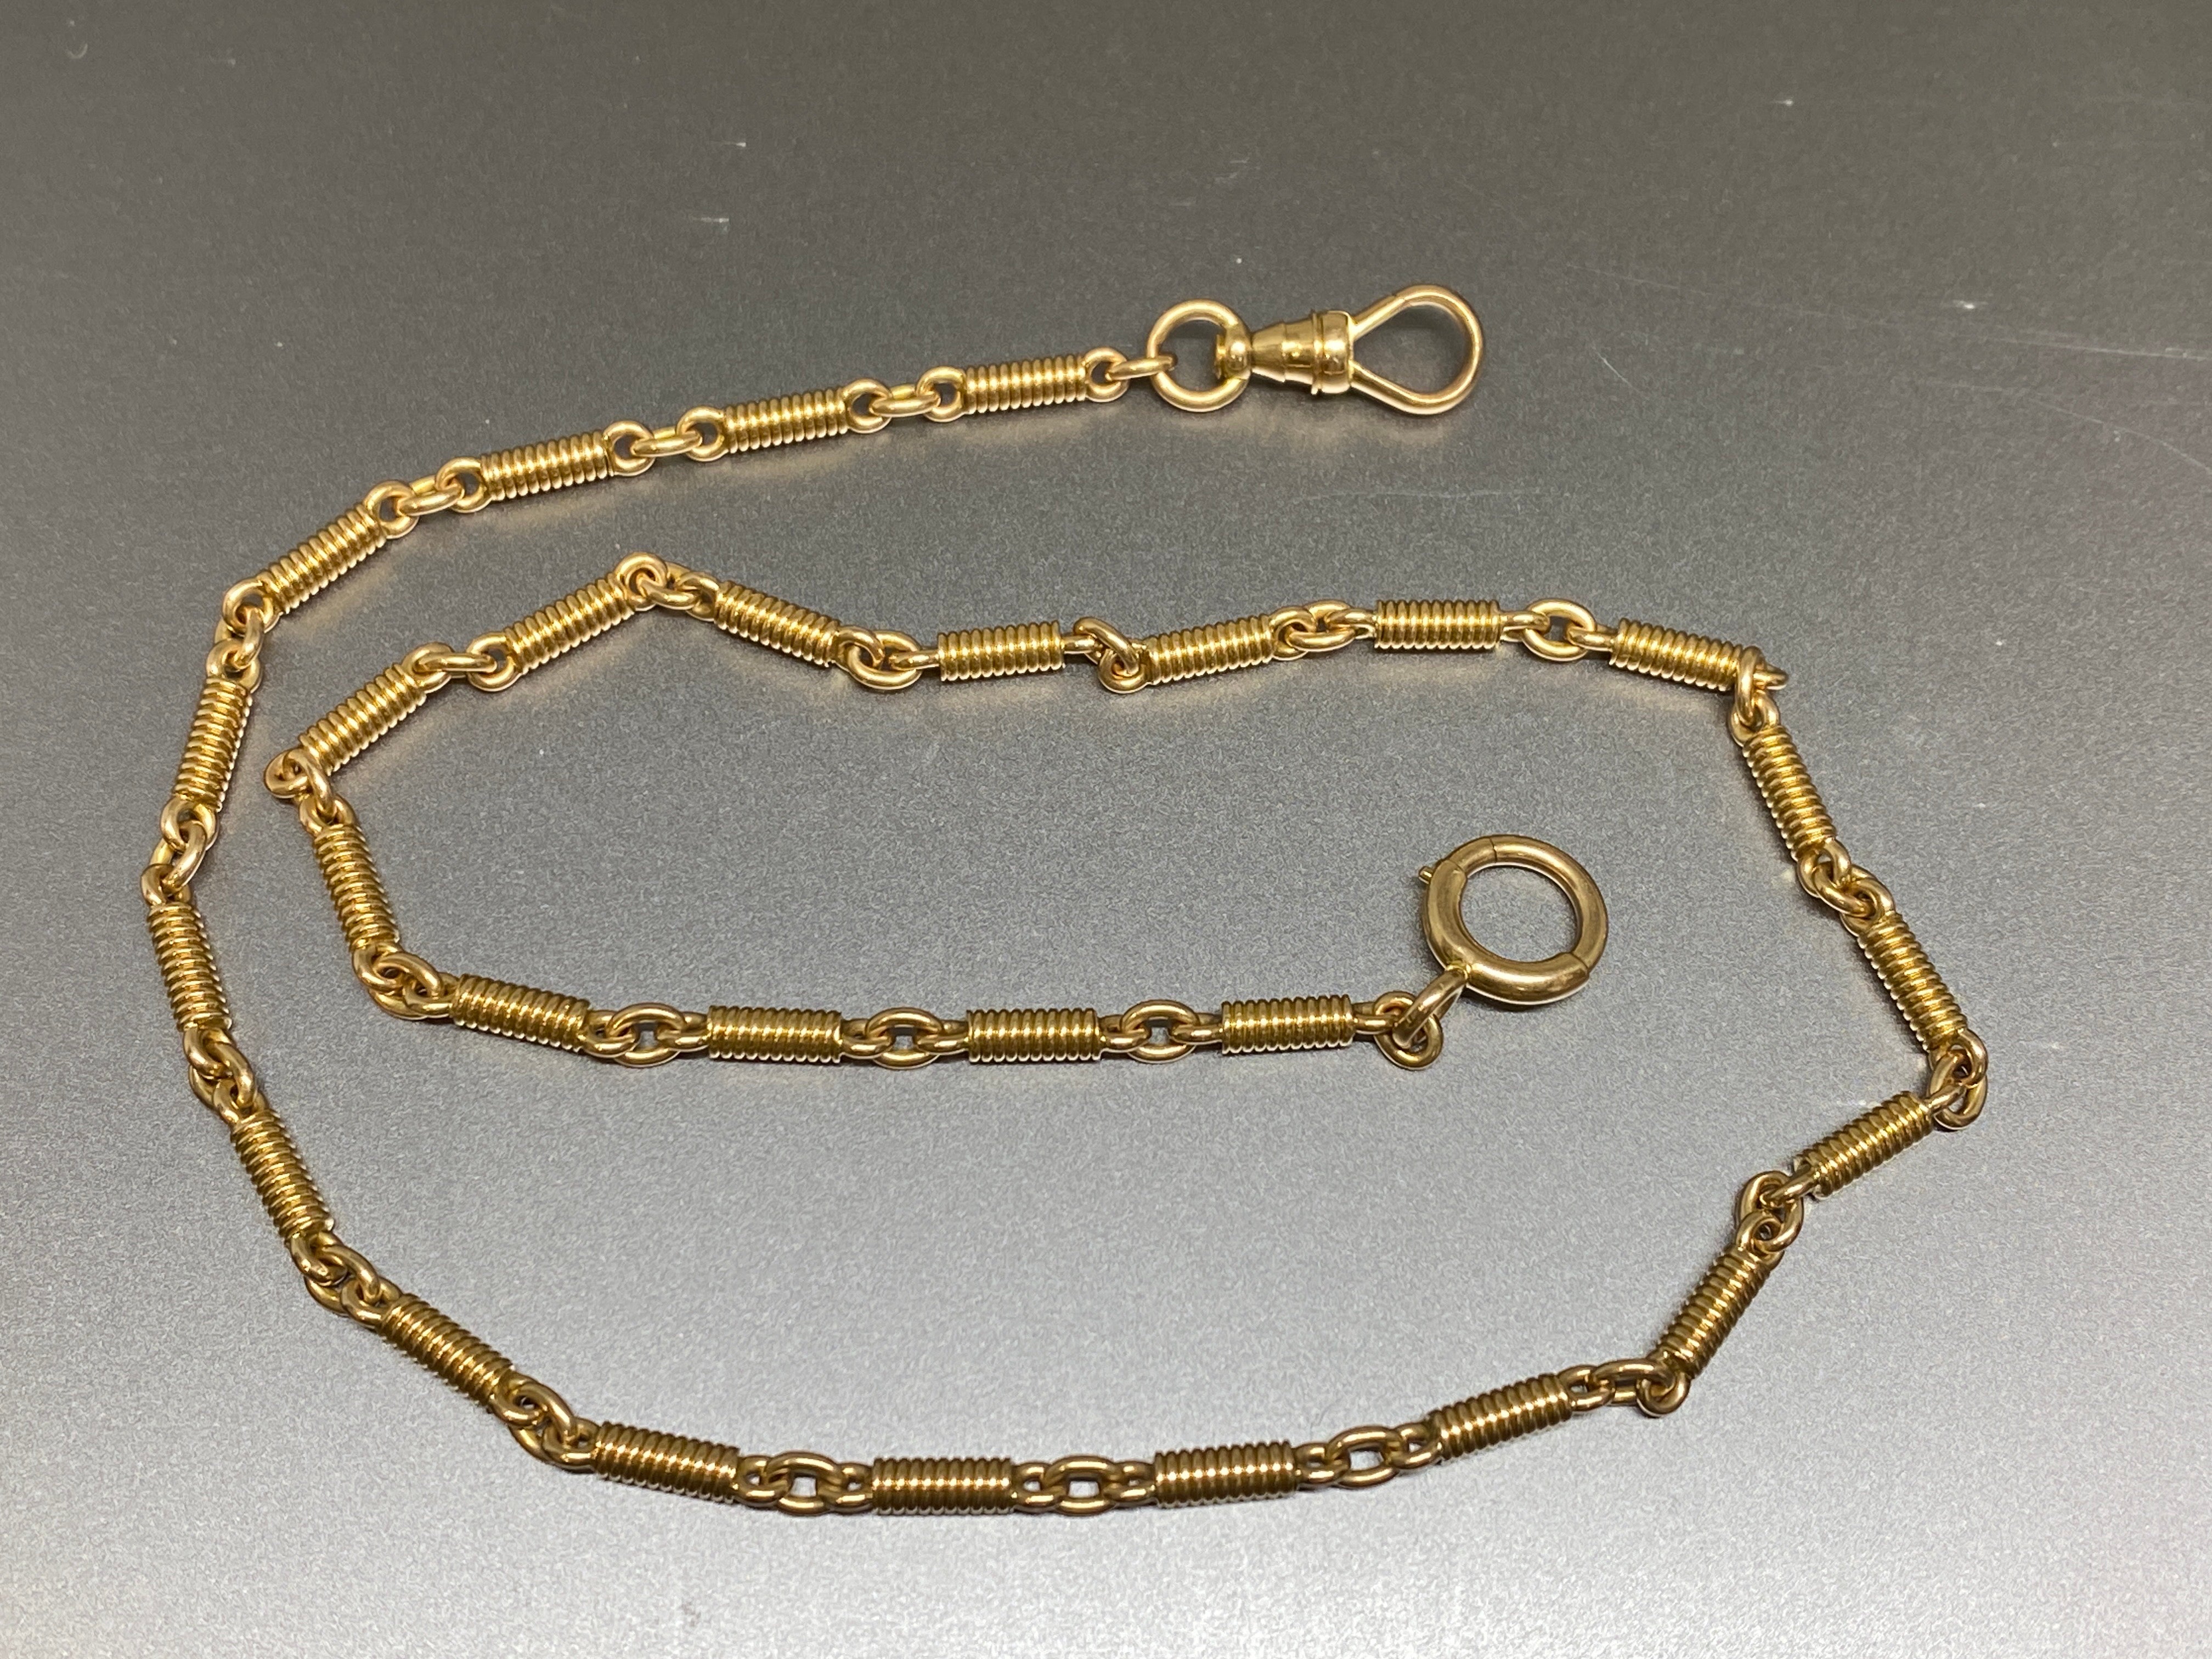 Diese ausgefallene Gliederkette aus dem späten 19. Jahrhundert wurde aus massivem 14-karätigem Gold gefertigt.  Es ist ein wunderschönes, warmes, rosagelbes Gold und besteht aus besonderen, ungewöhnlichen Gliedern, die wie eng gewundene Spiralfedern